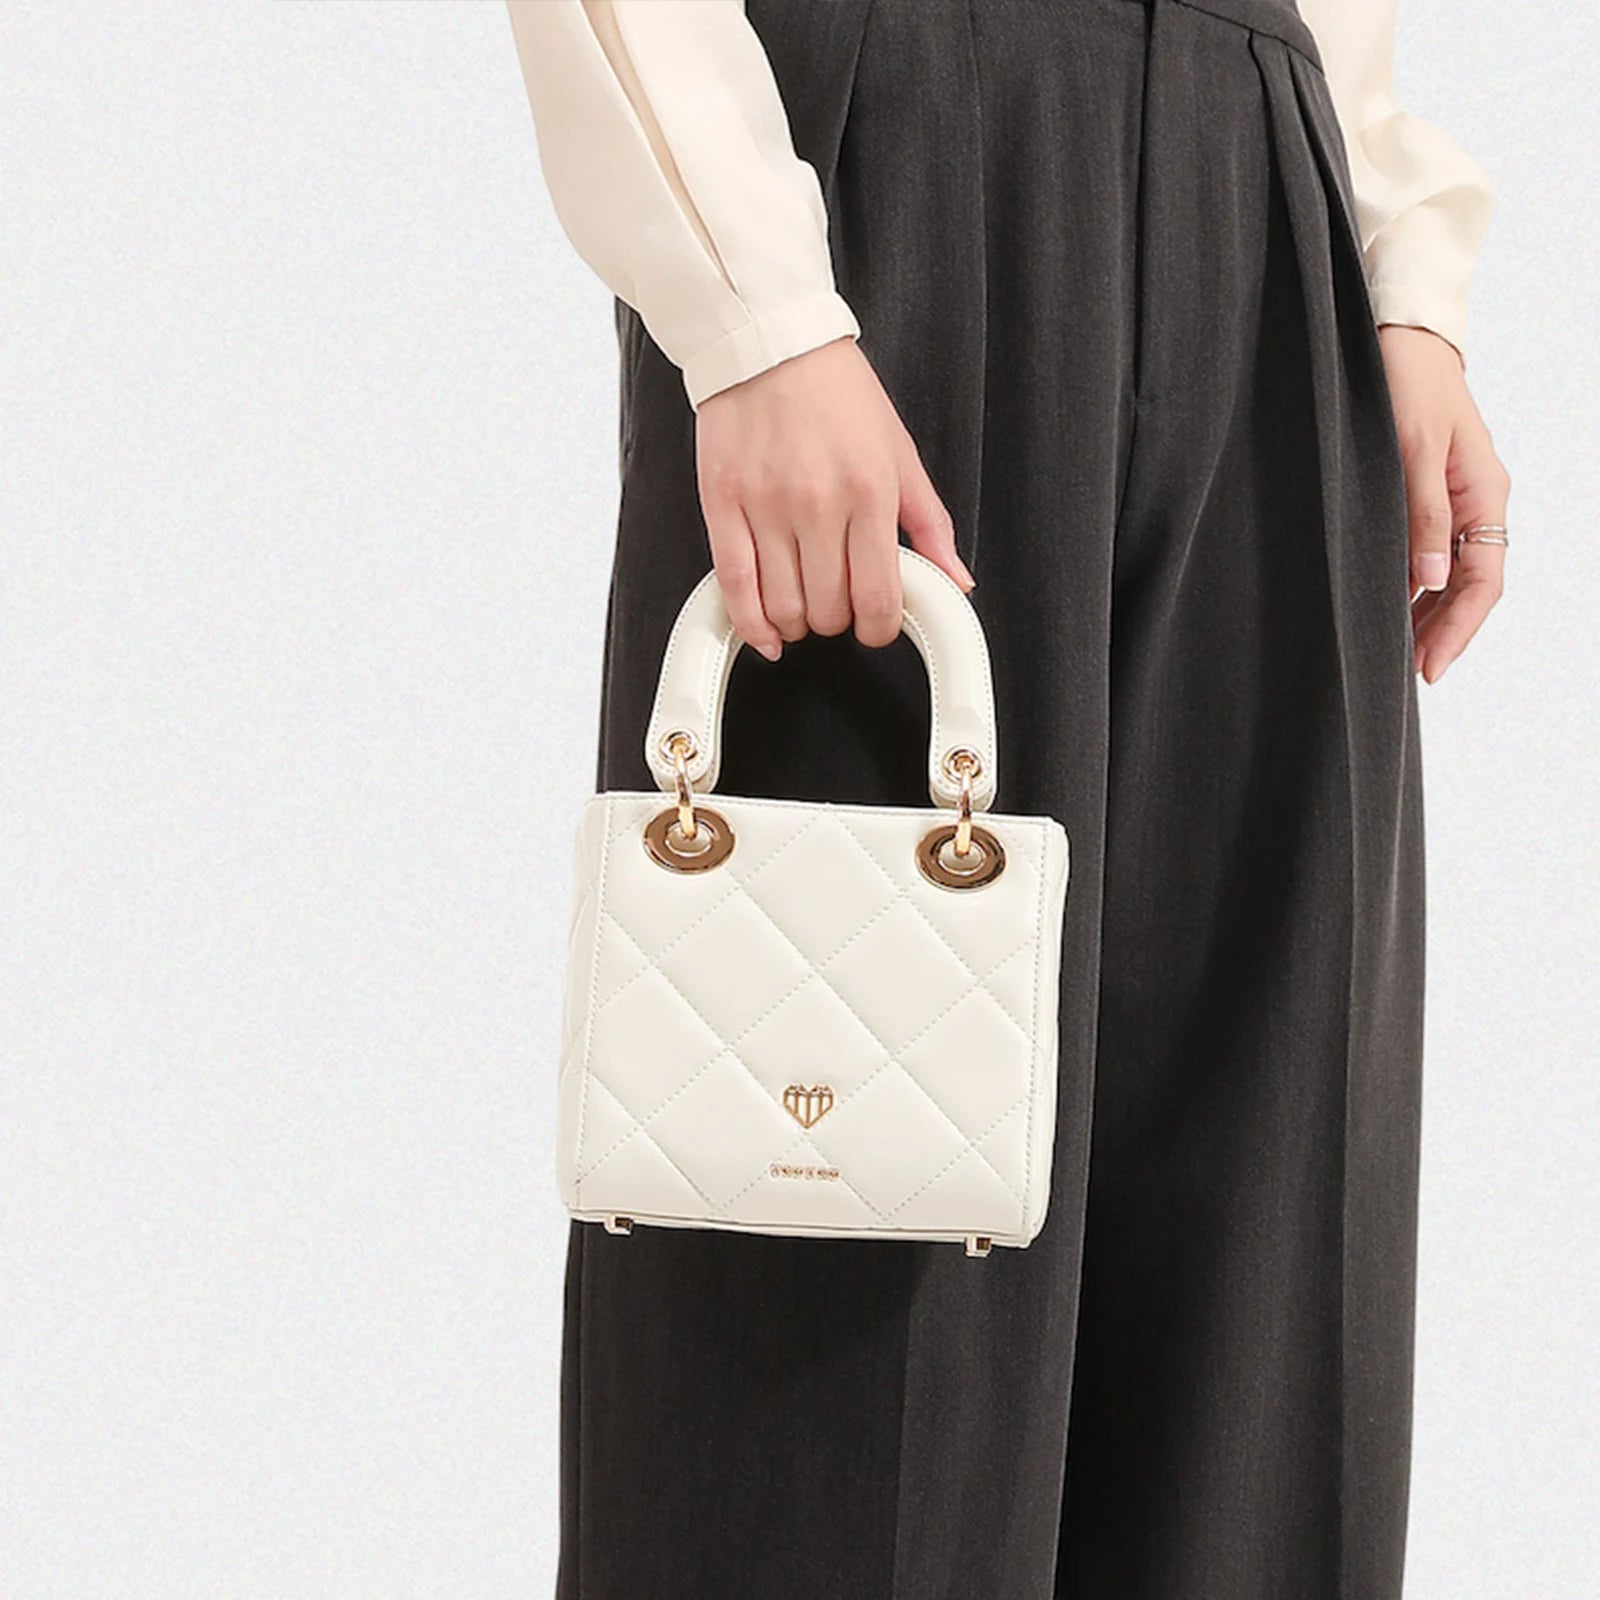 TOUTOU Luxury Designer Handbag for Women's with Removable Shoulder Strap Quilted Shoulder Bag Genuine Leather Crossbody Bag LUXLIFE BRANDS